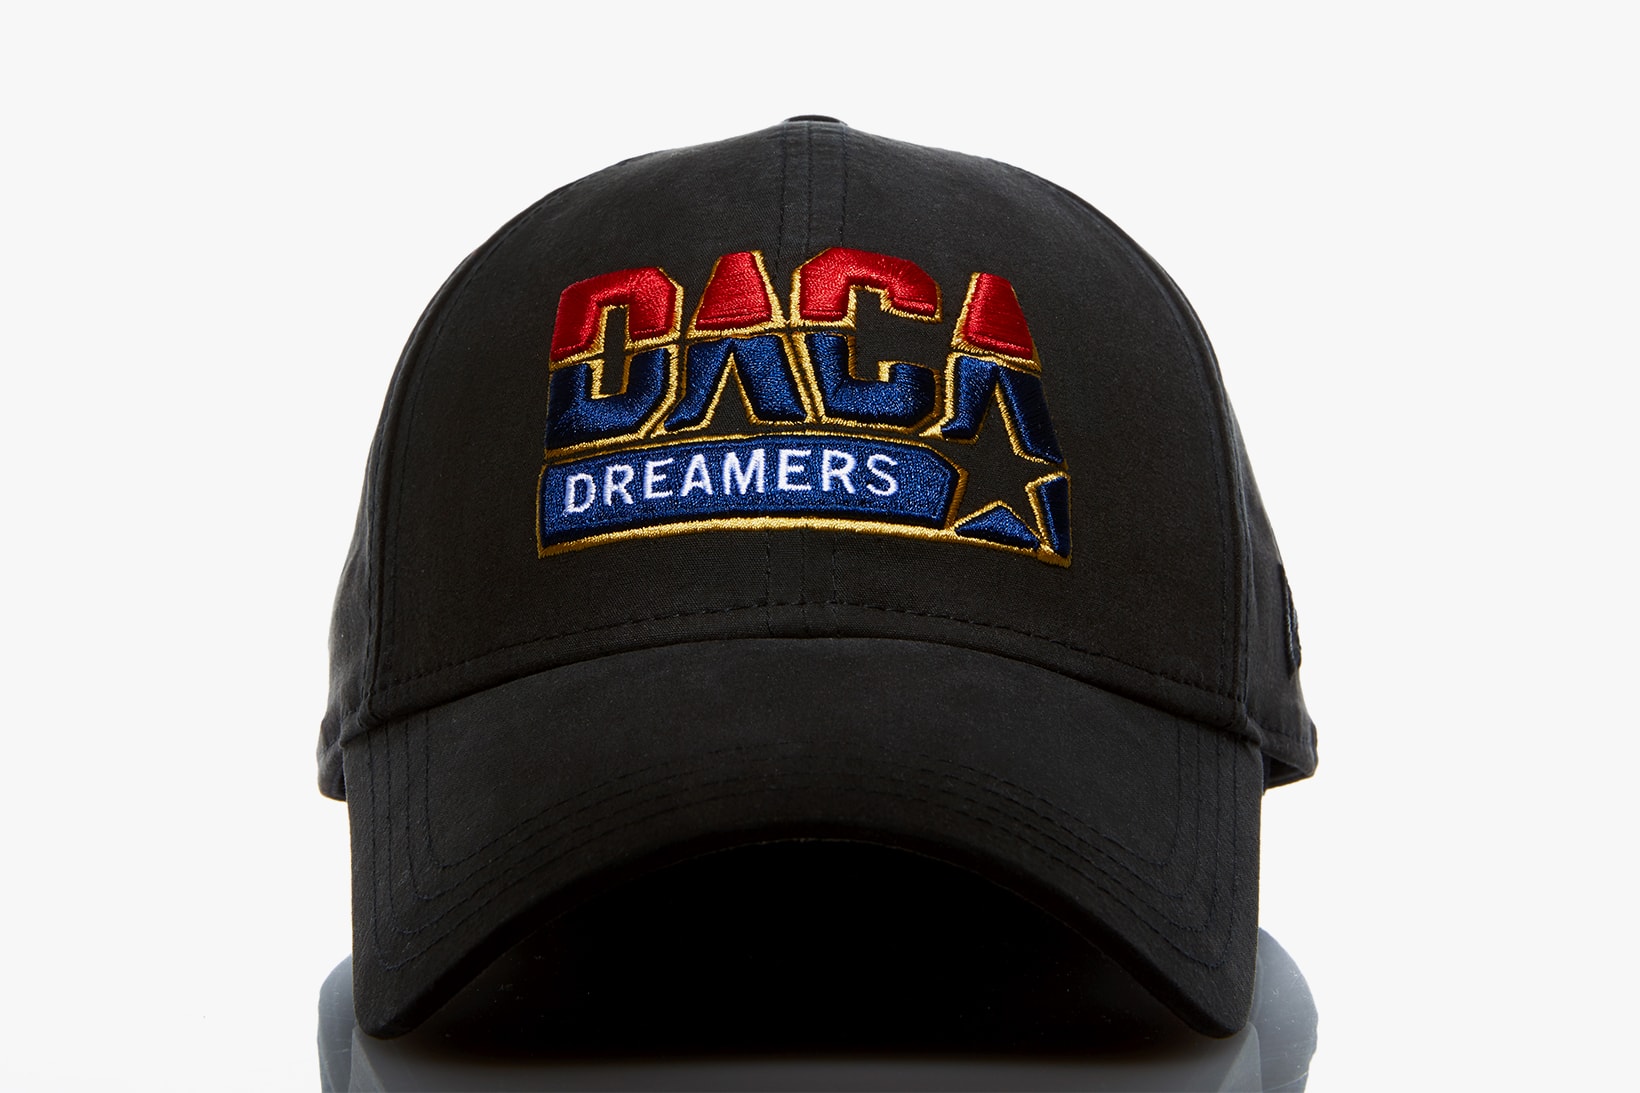 Public School DACA Hat dreamers dream team black white ACLU 2018 february 16 release date info